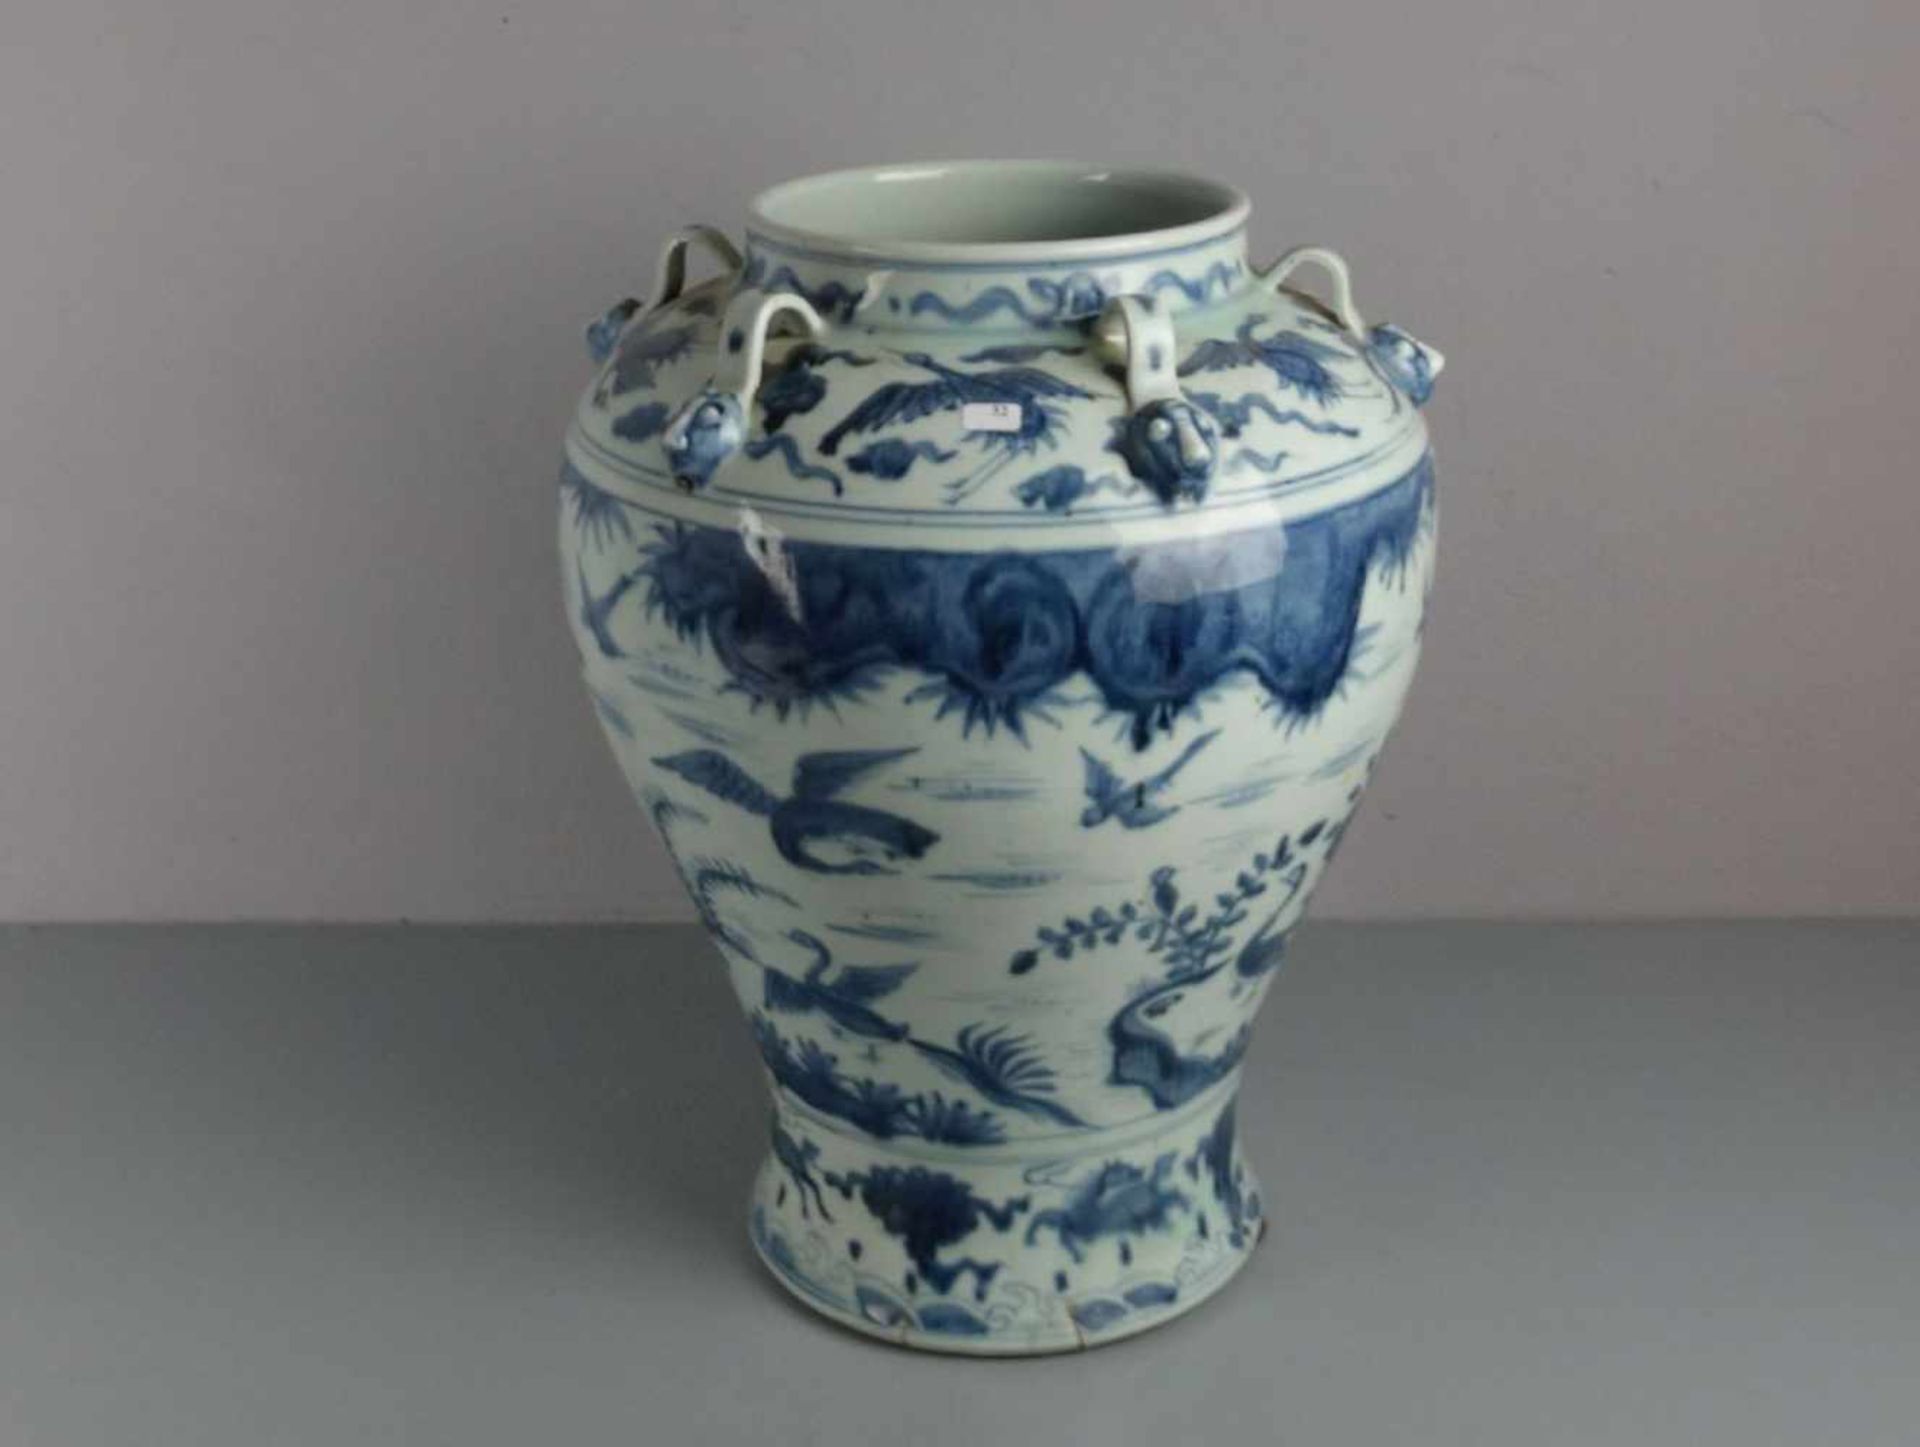 CHINESISCHE VASE, Porzellan (ungemarkt), späte Qing Dynastie / chinese vase, late Qing dynasty.